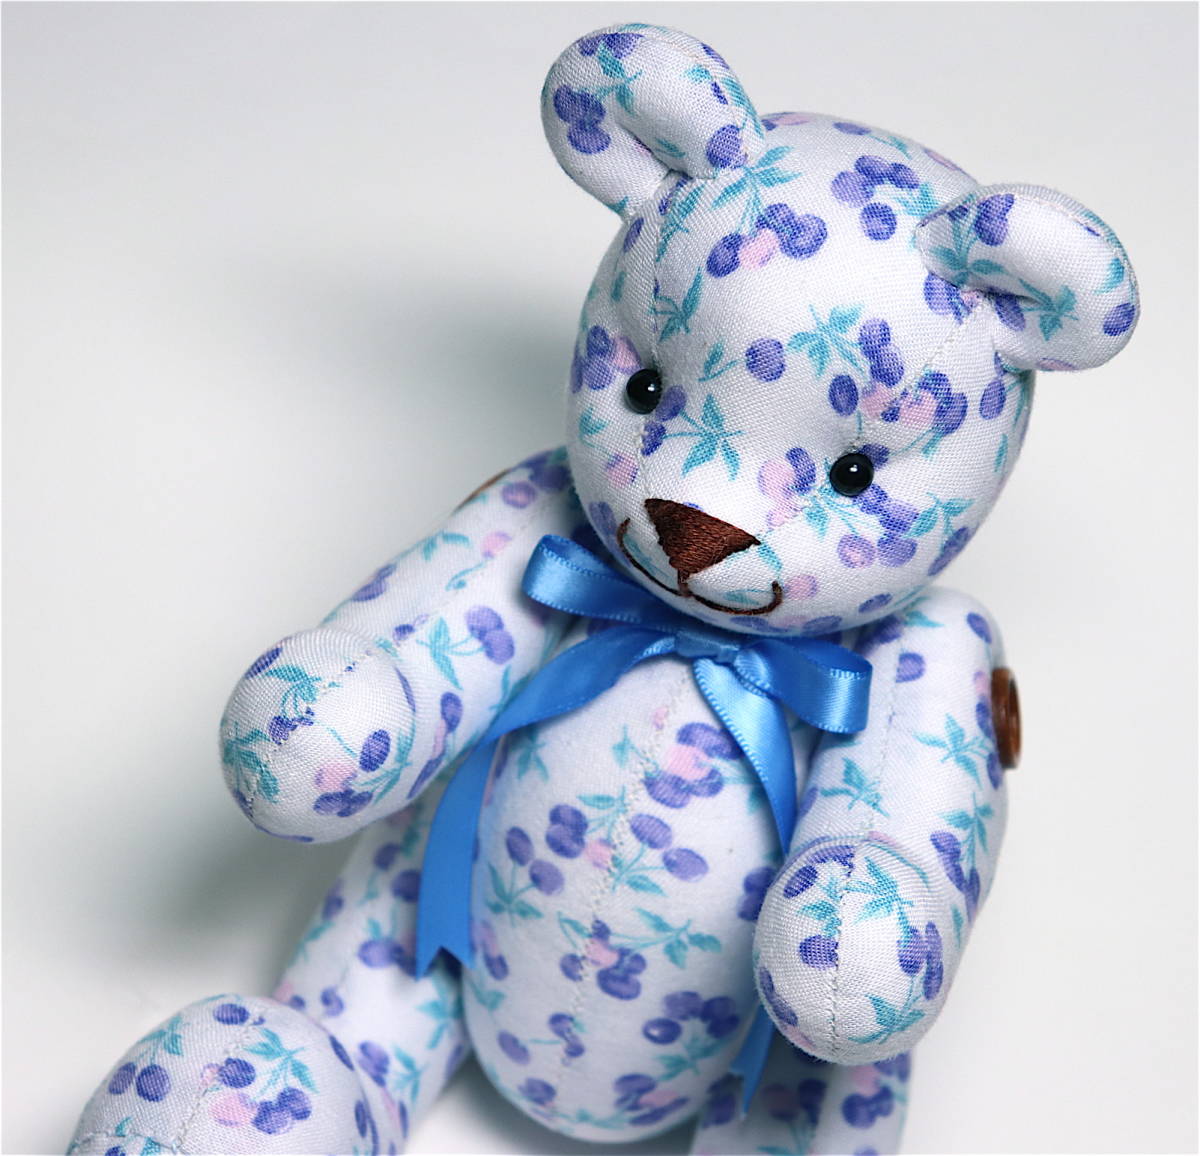 [수제] 체리 블루 라이트 블루 테디베어 수제 곰 인형 새상품 미사용, 테디 베어, 일반적인 테디베어, 몸길이 10cm~30cm